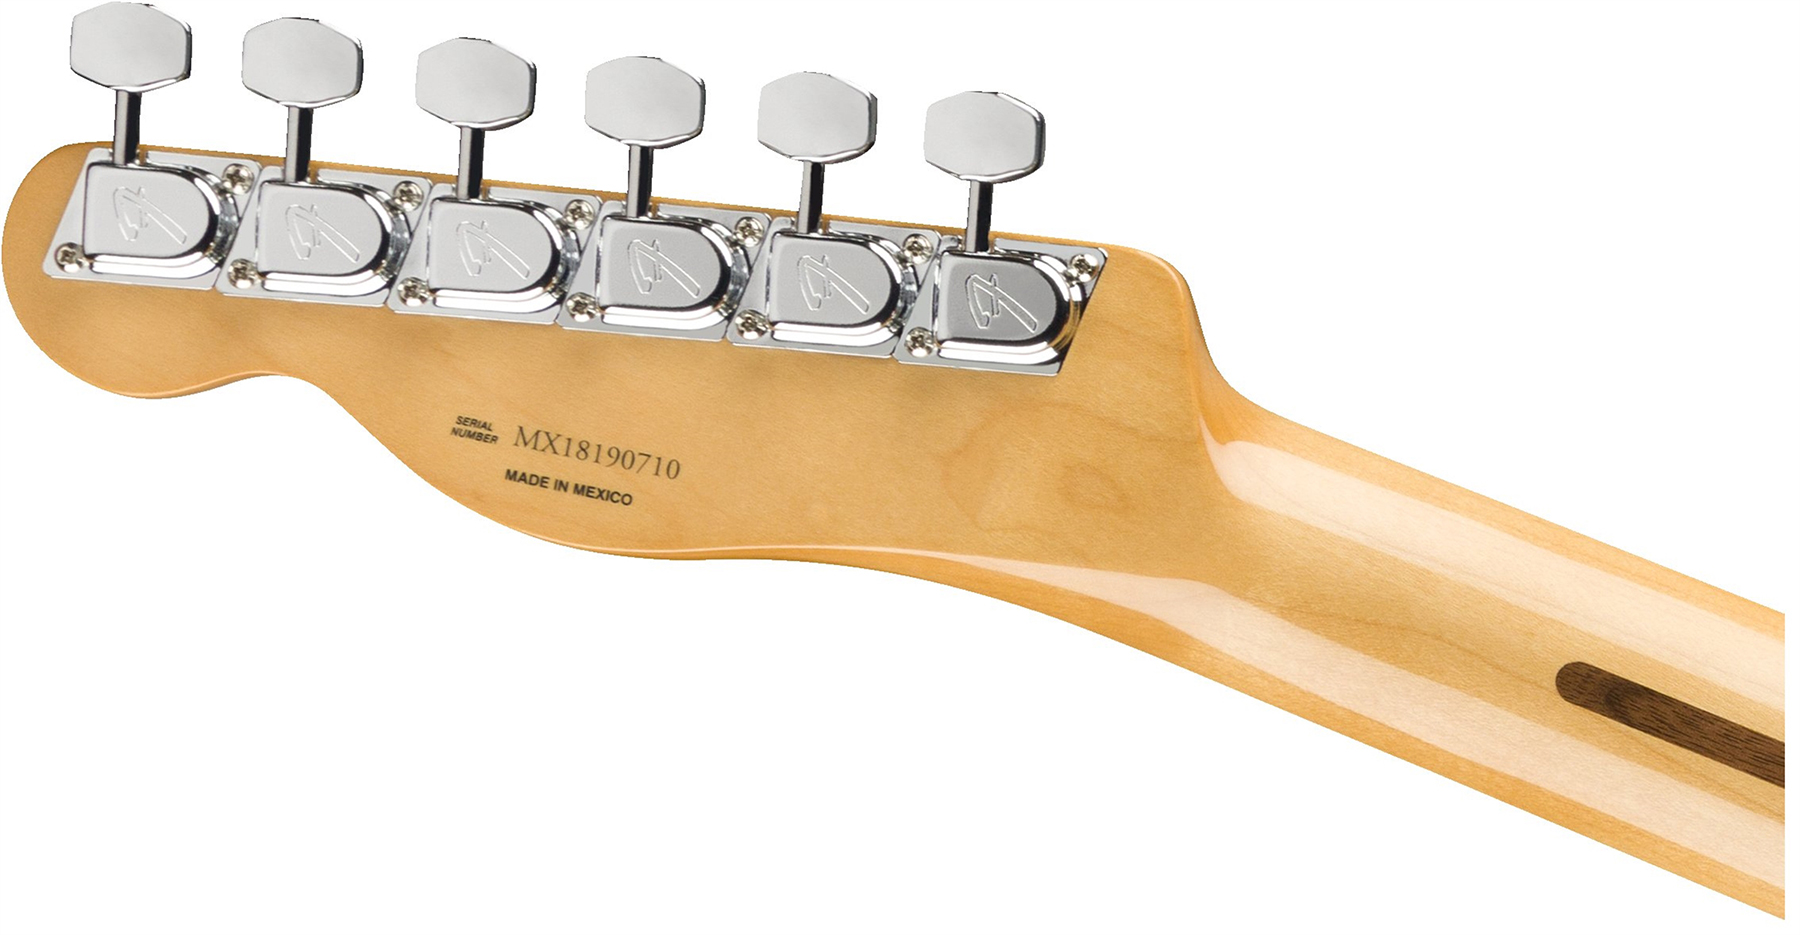 Fender Tele 70s Custom Vintera Vintage Mex Hh Pf - Fiesta Red - Guitarra eléctrica con forma de tel - Variation 3